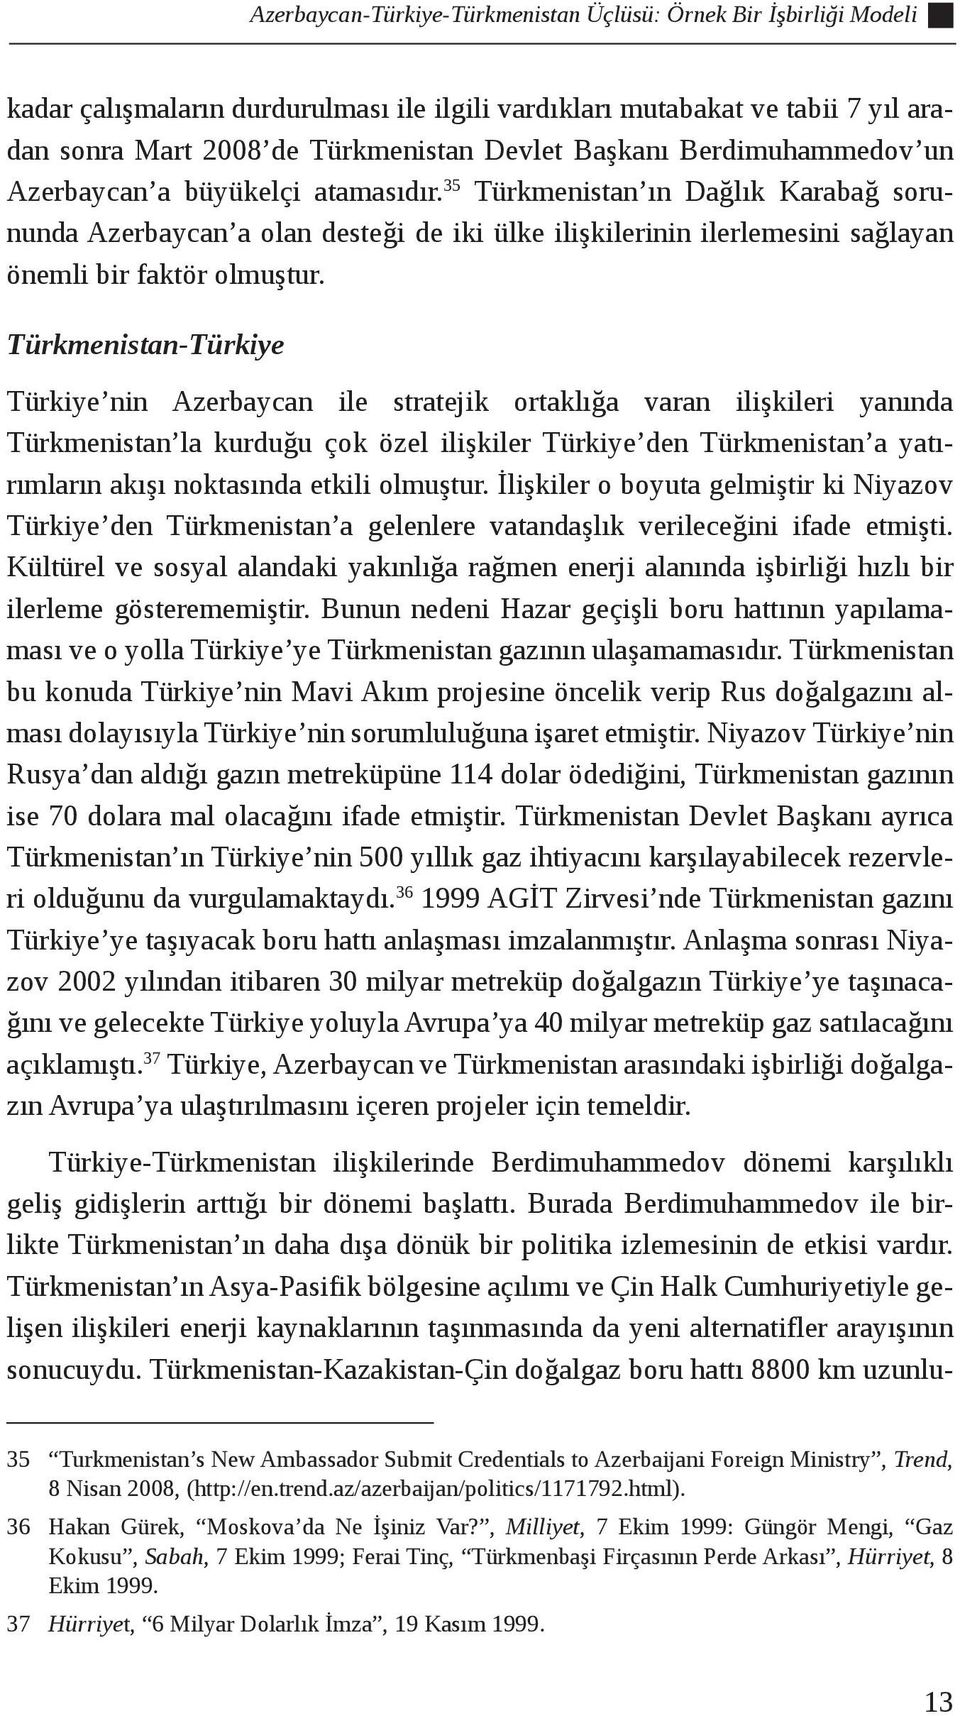 Türkmenistan-Türkiye Türkiye nin Azerbaycan ile stratejik ortaklığa varan ilişkileri yanında Türkmenistan la kurduğu çok özel ilişkiler Türkiye den Türkmenistan a yatırımların akışı noktasında etkili